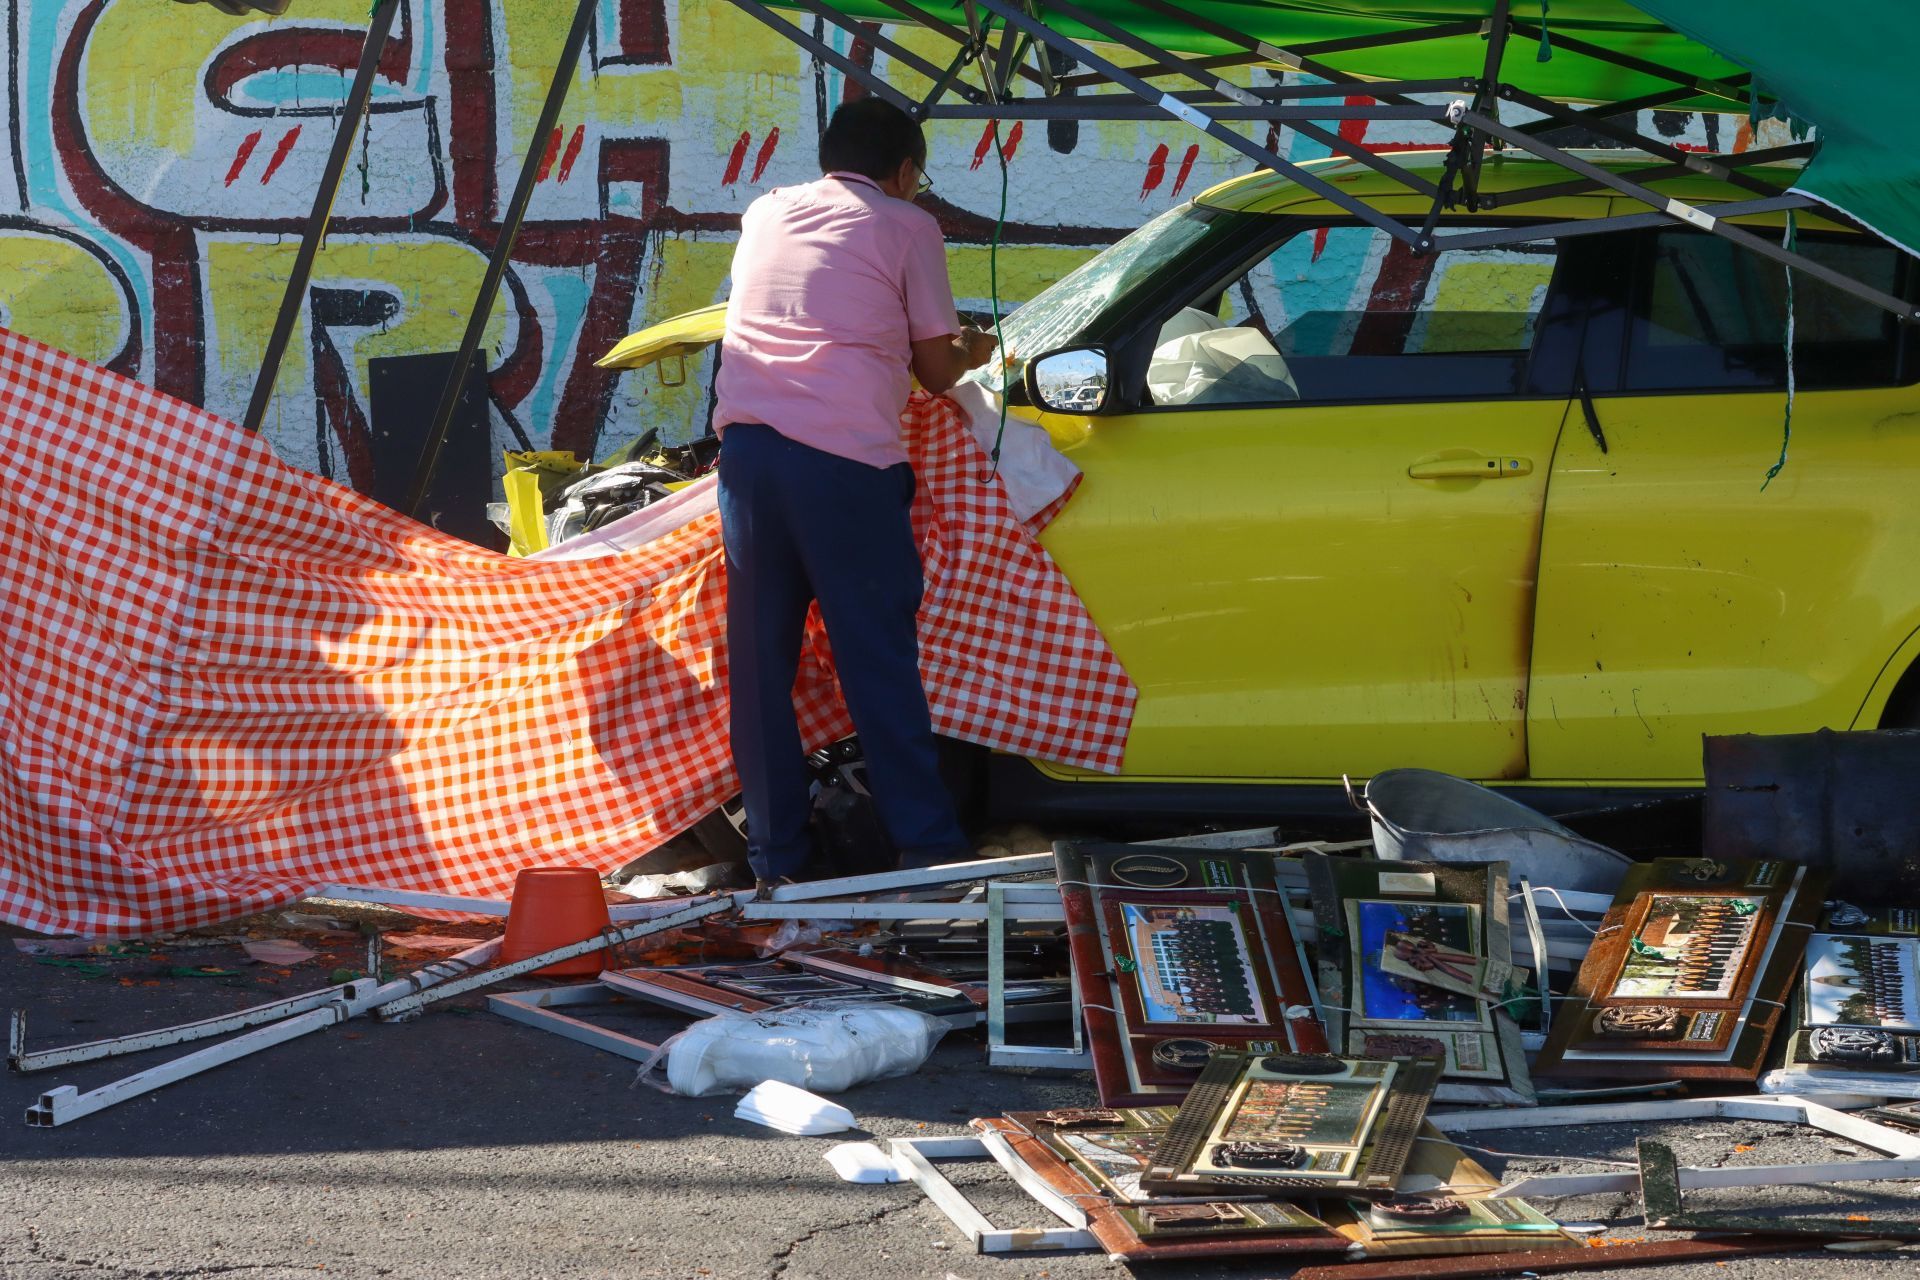 Identifican al conductor involucrado en accidente de Ecatepec